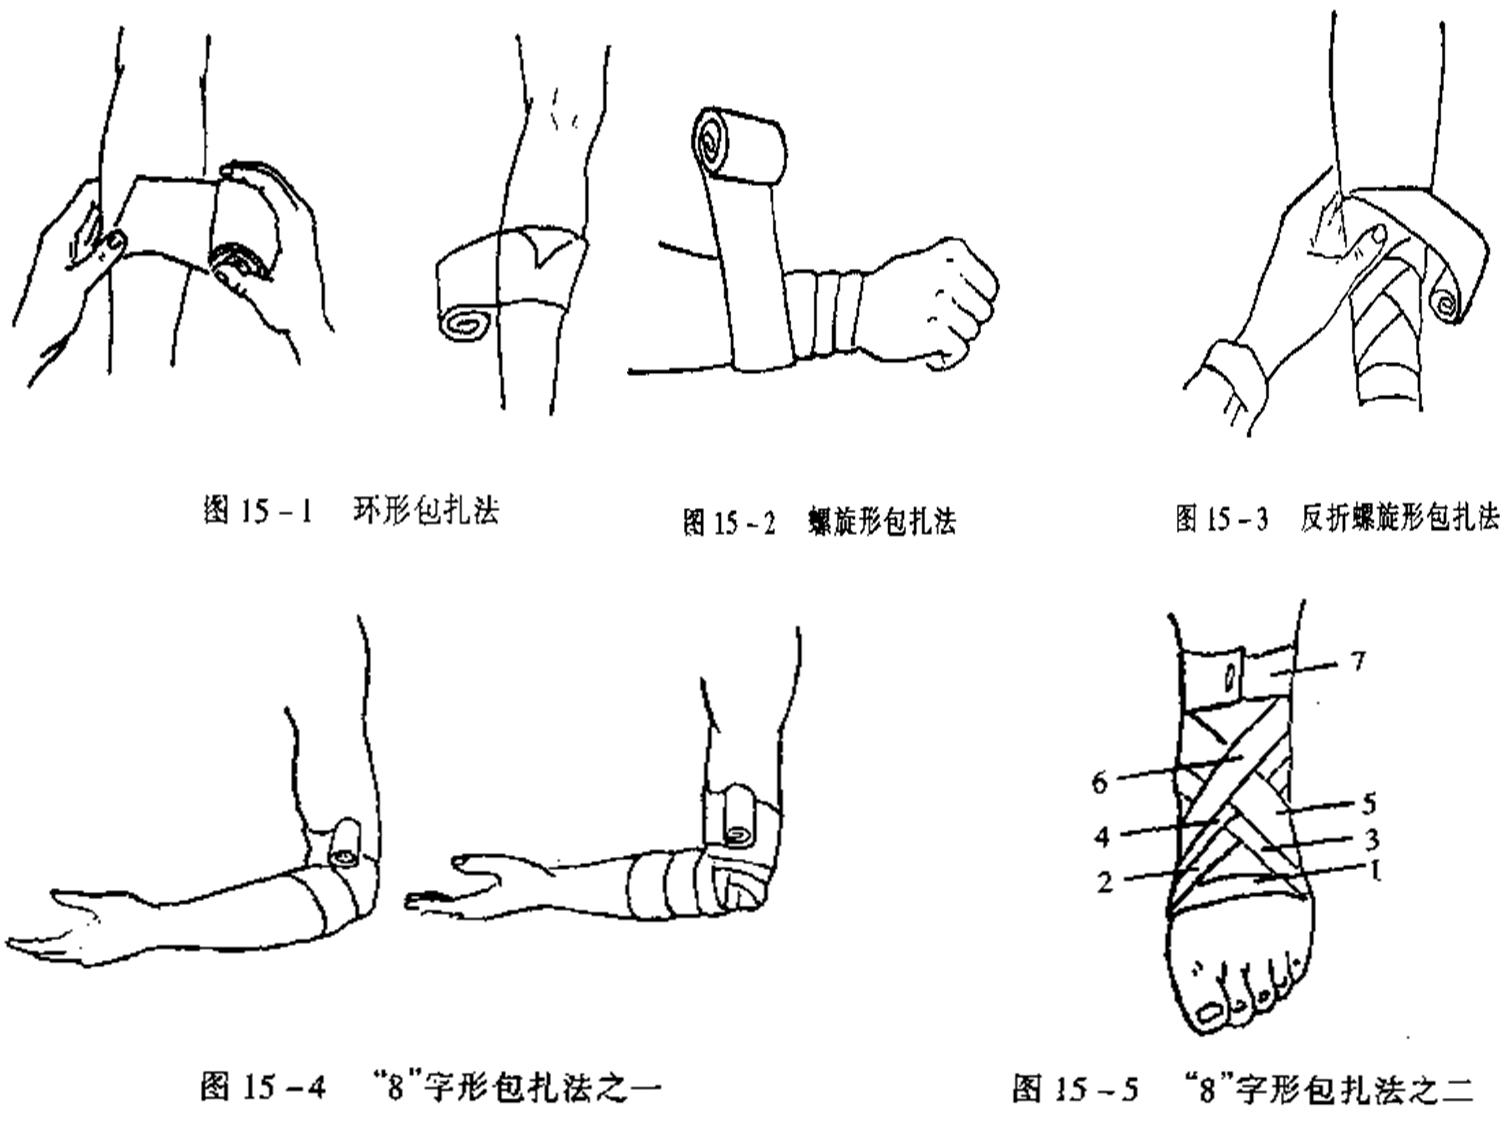 螺旋形包扎法:用于包扎肢体粗细差不多的部位,如上臂,大腿下段和手指